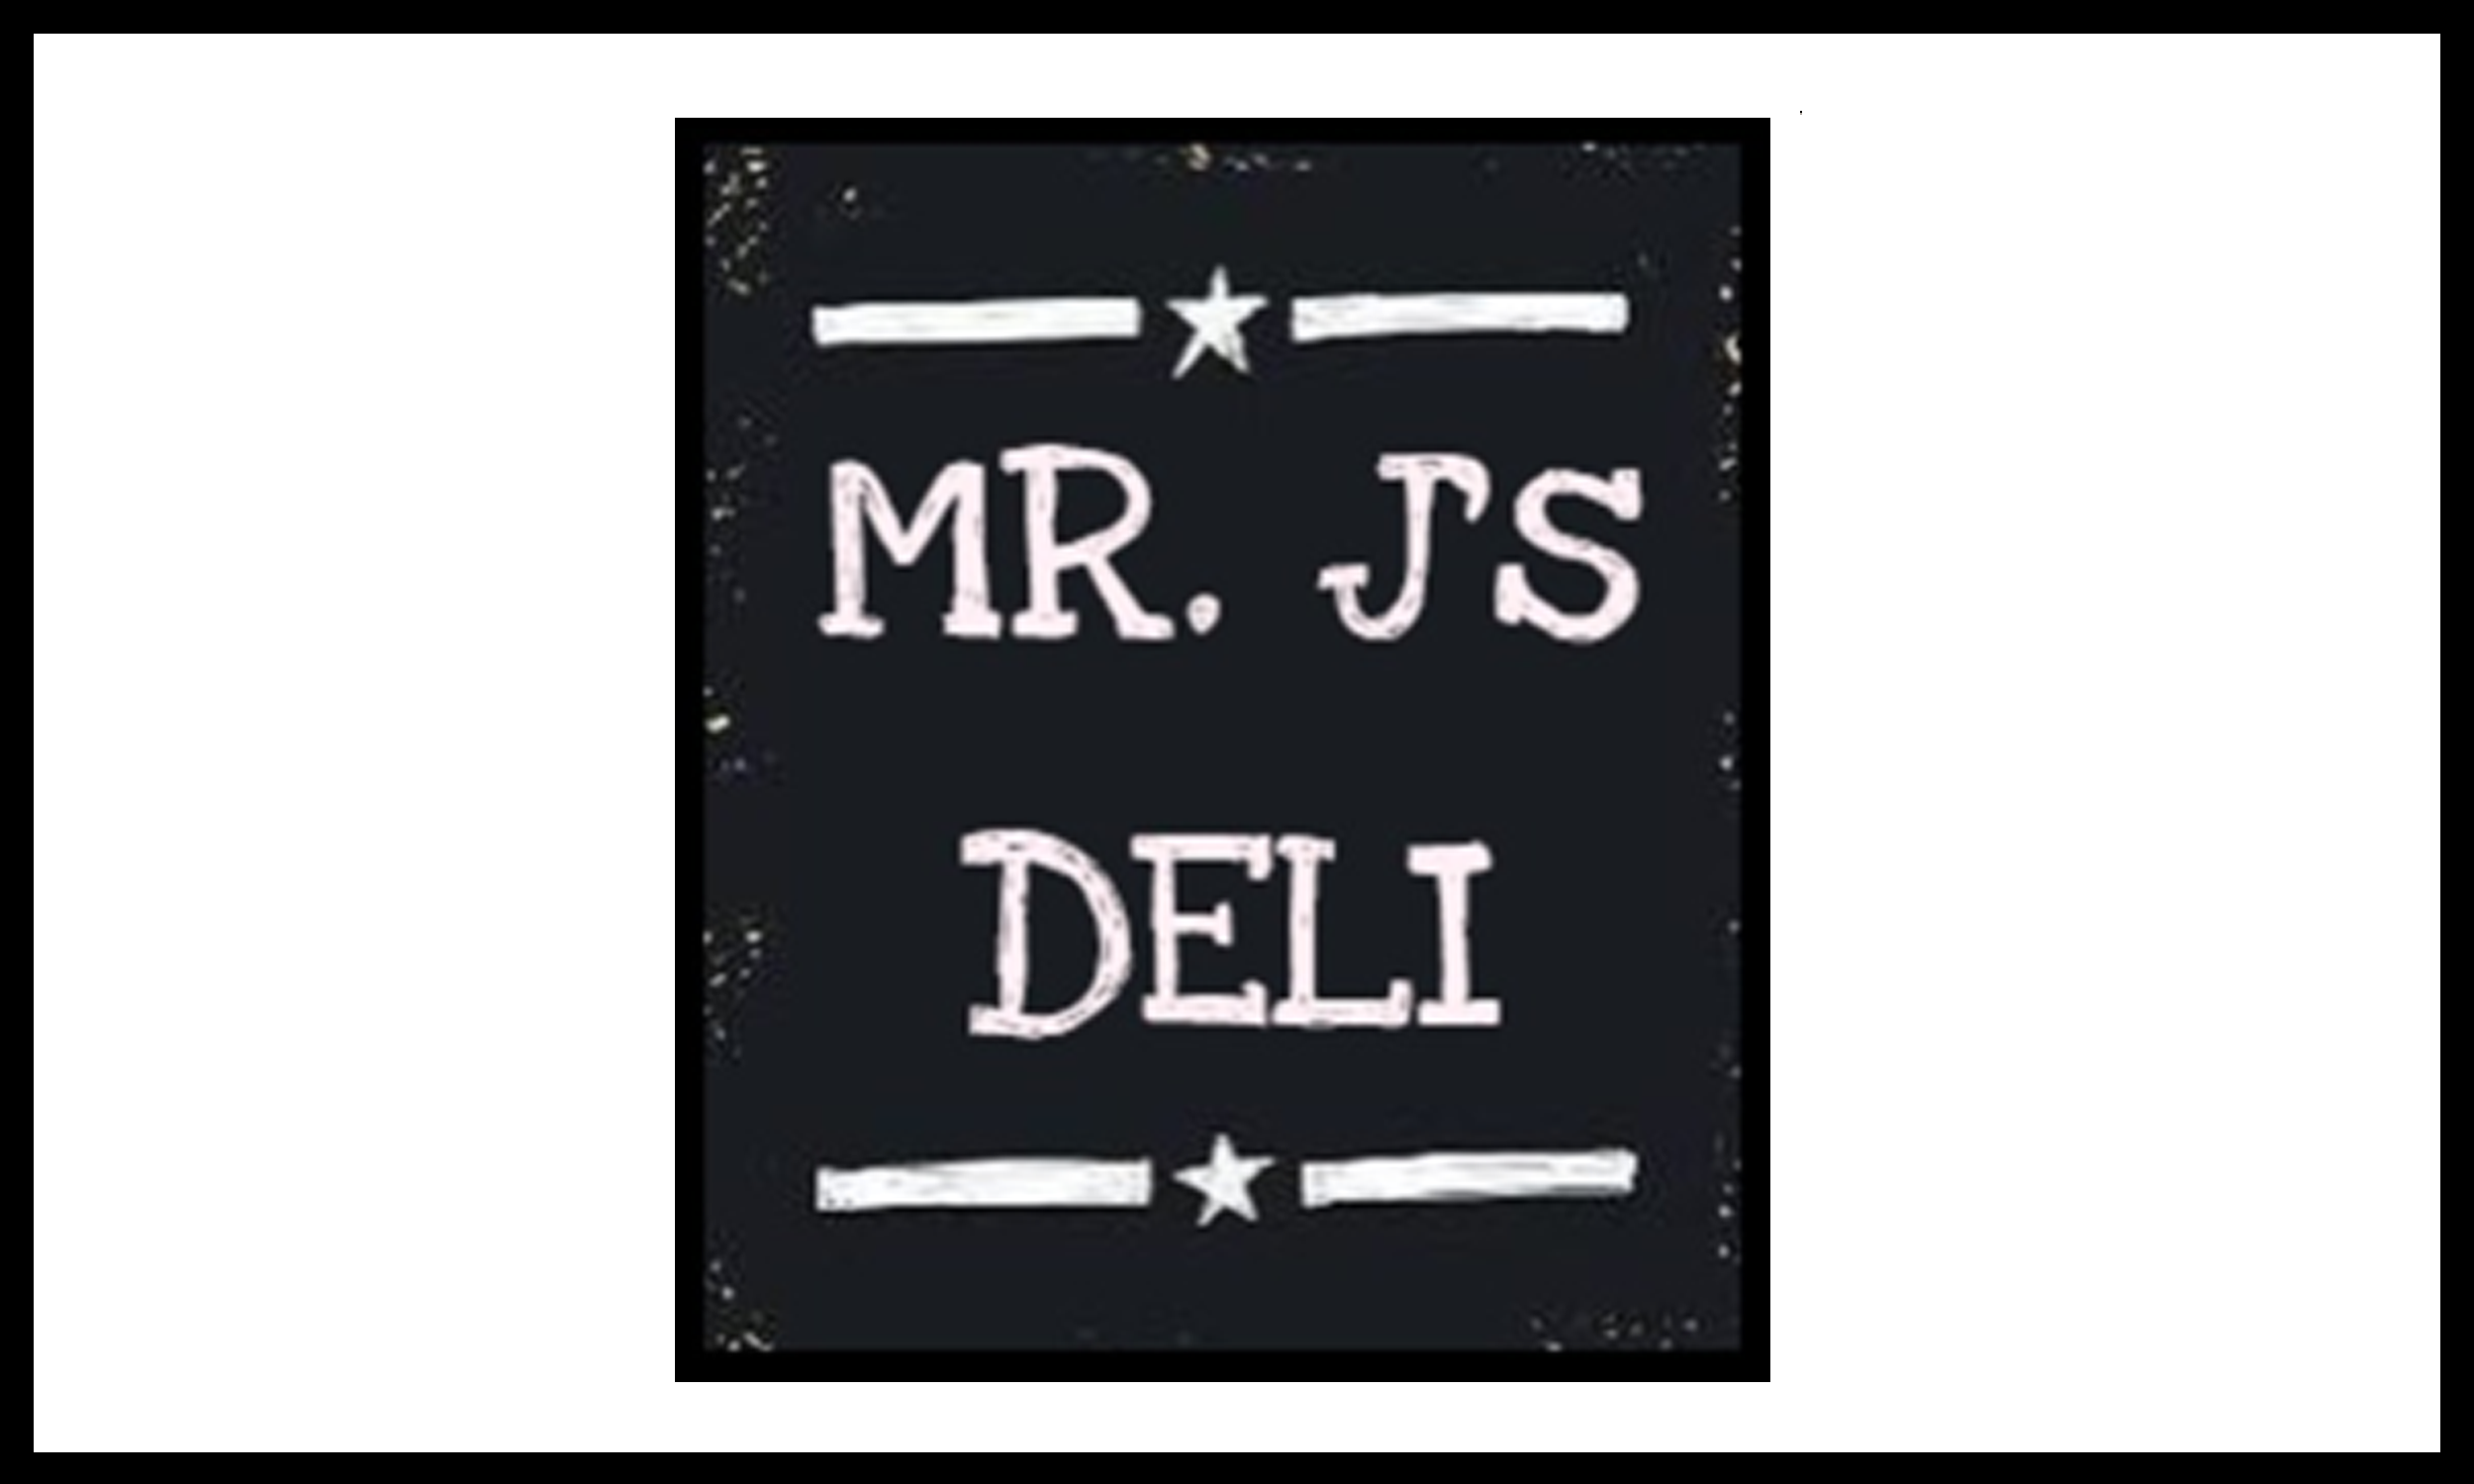 Mr. J's Deli